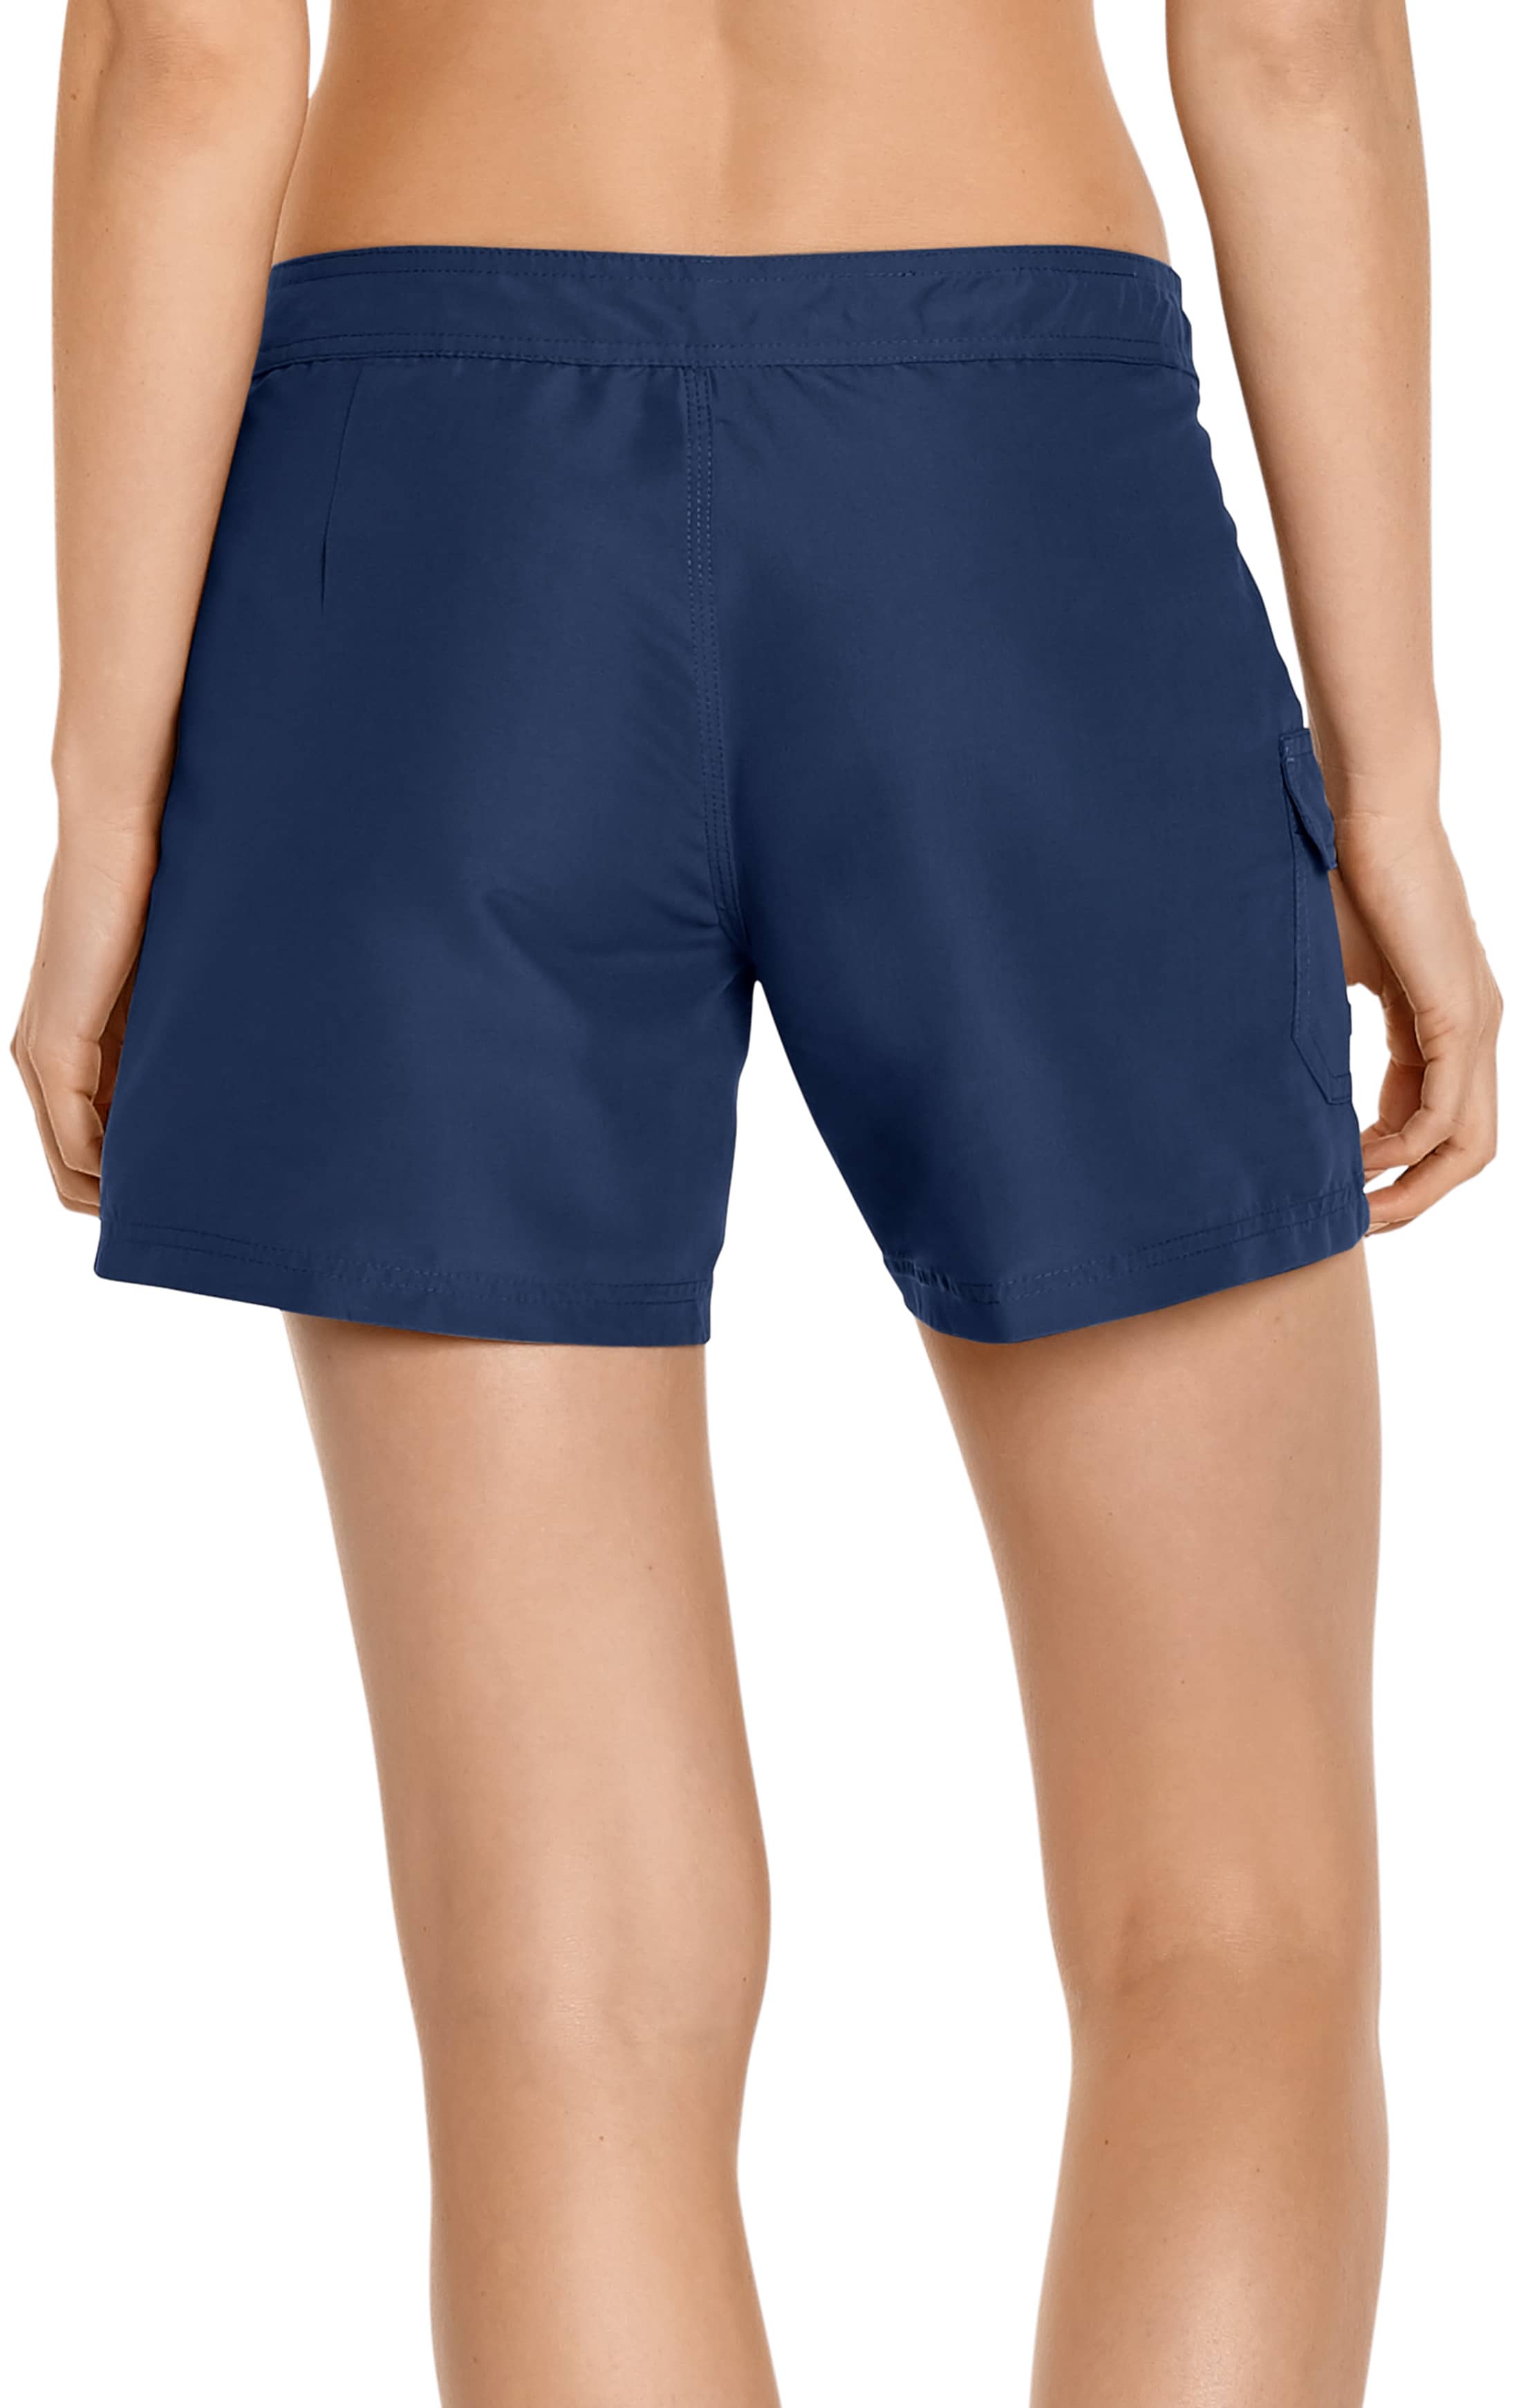 womens board shorts